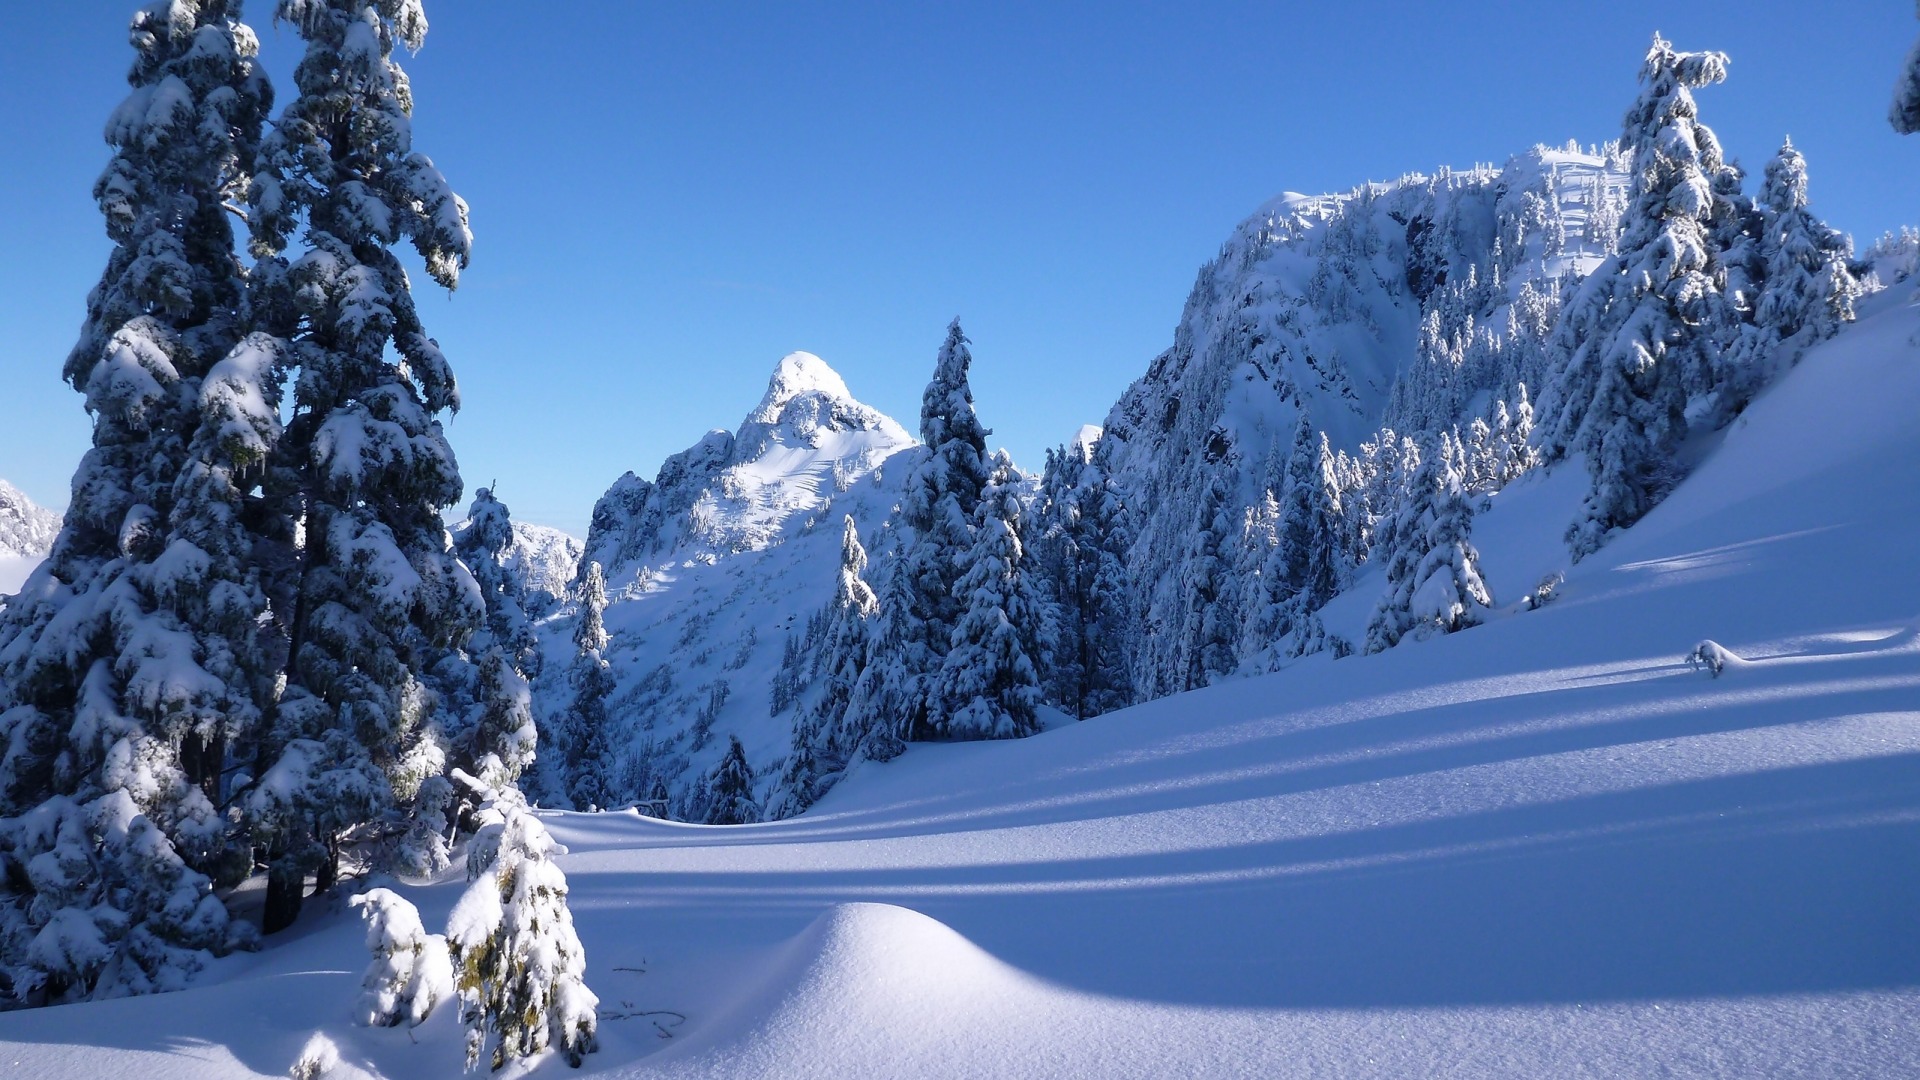 冬天,雪景,雪山,树,自然风景桌面壁纸